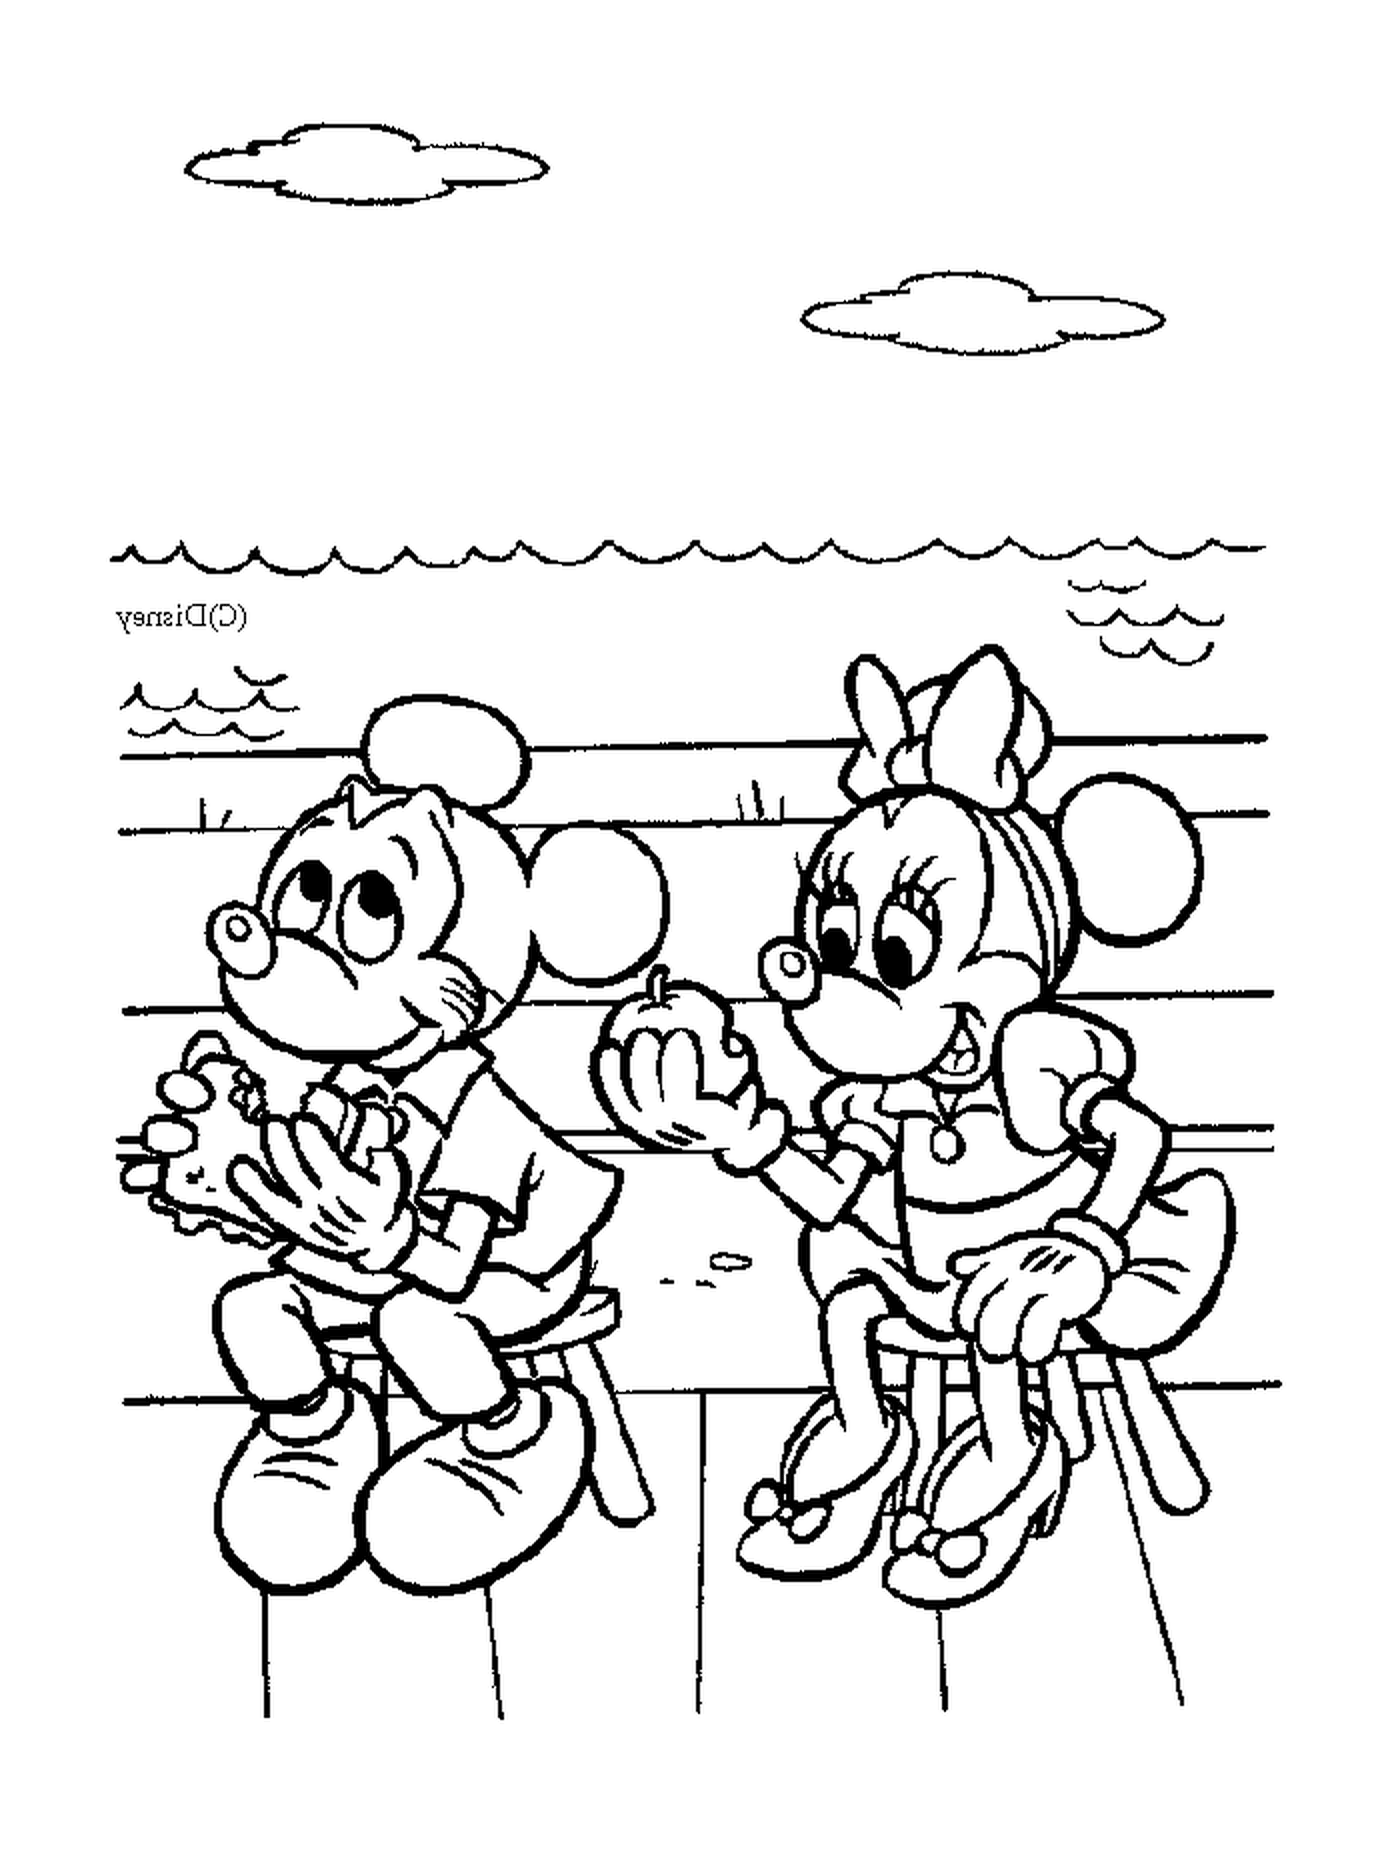  Mickey und Minnie essen: auf einer Bank sitzen 